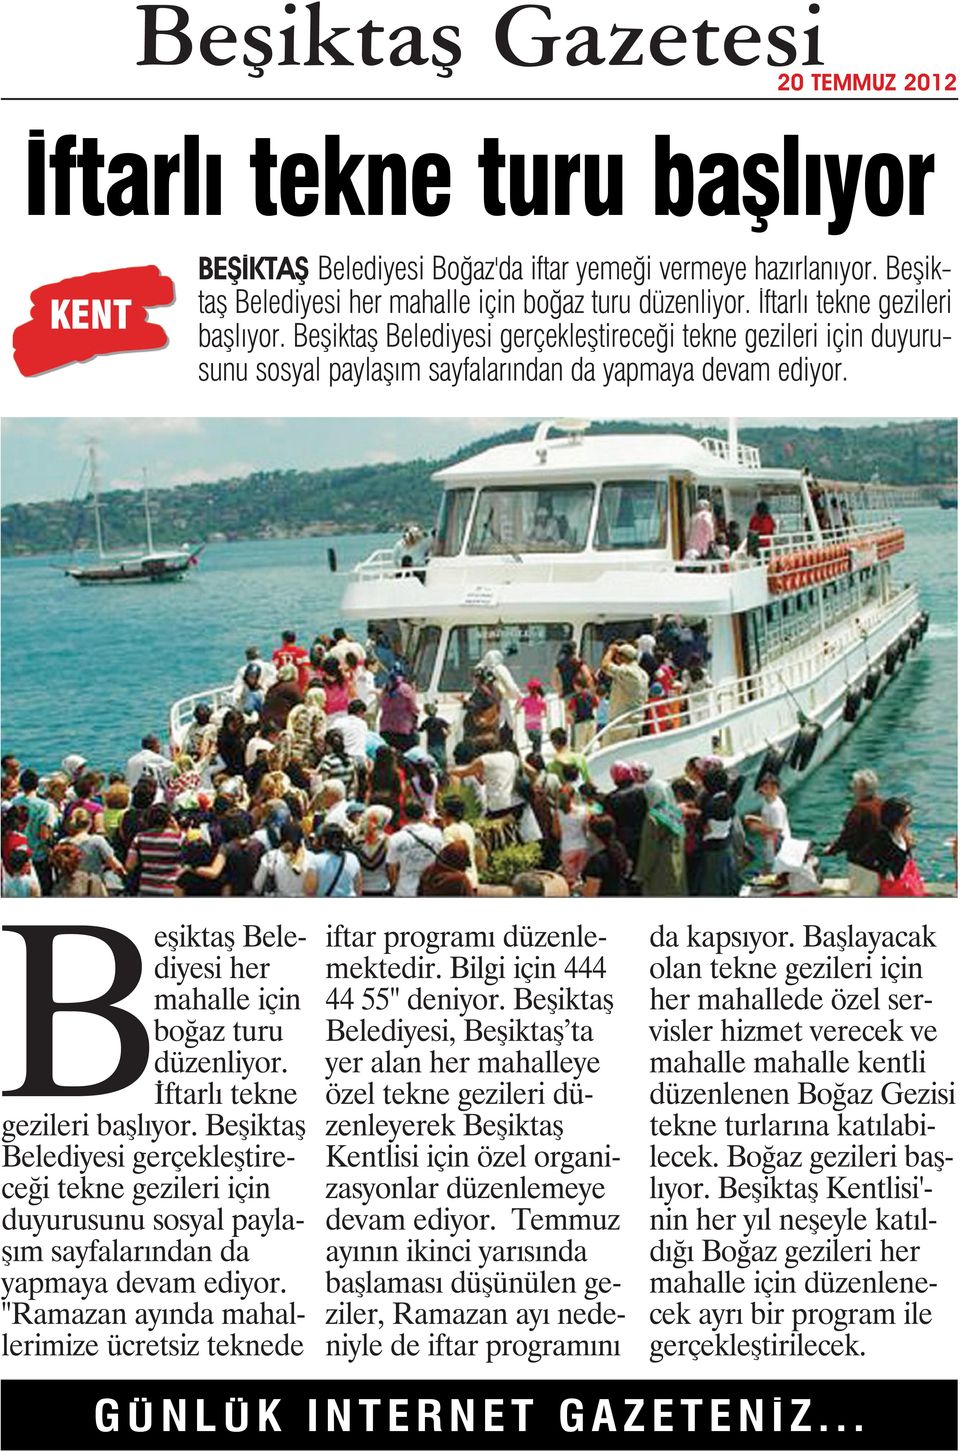 İftarlı tekne gezileri başlıyor. Beşiktaş Belediyesi gerçekleştireceği tekne gezileri için duyurusunu sosyal paylaşım sayfalarından da yapmaya devam ediyor.